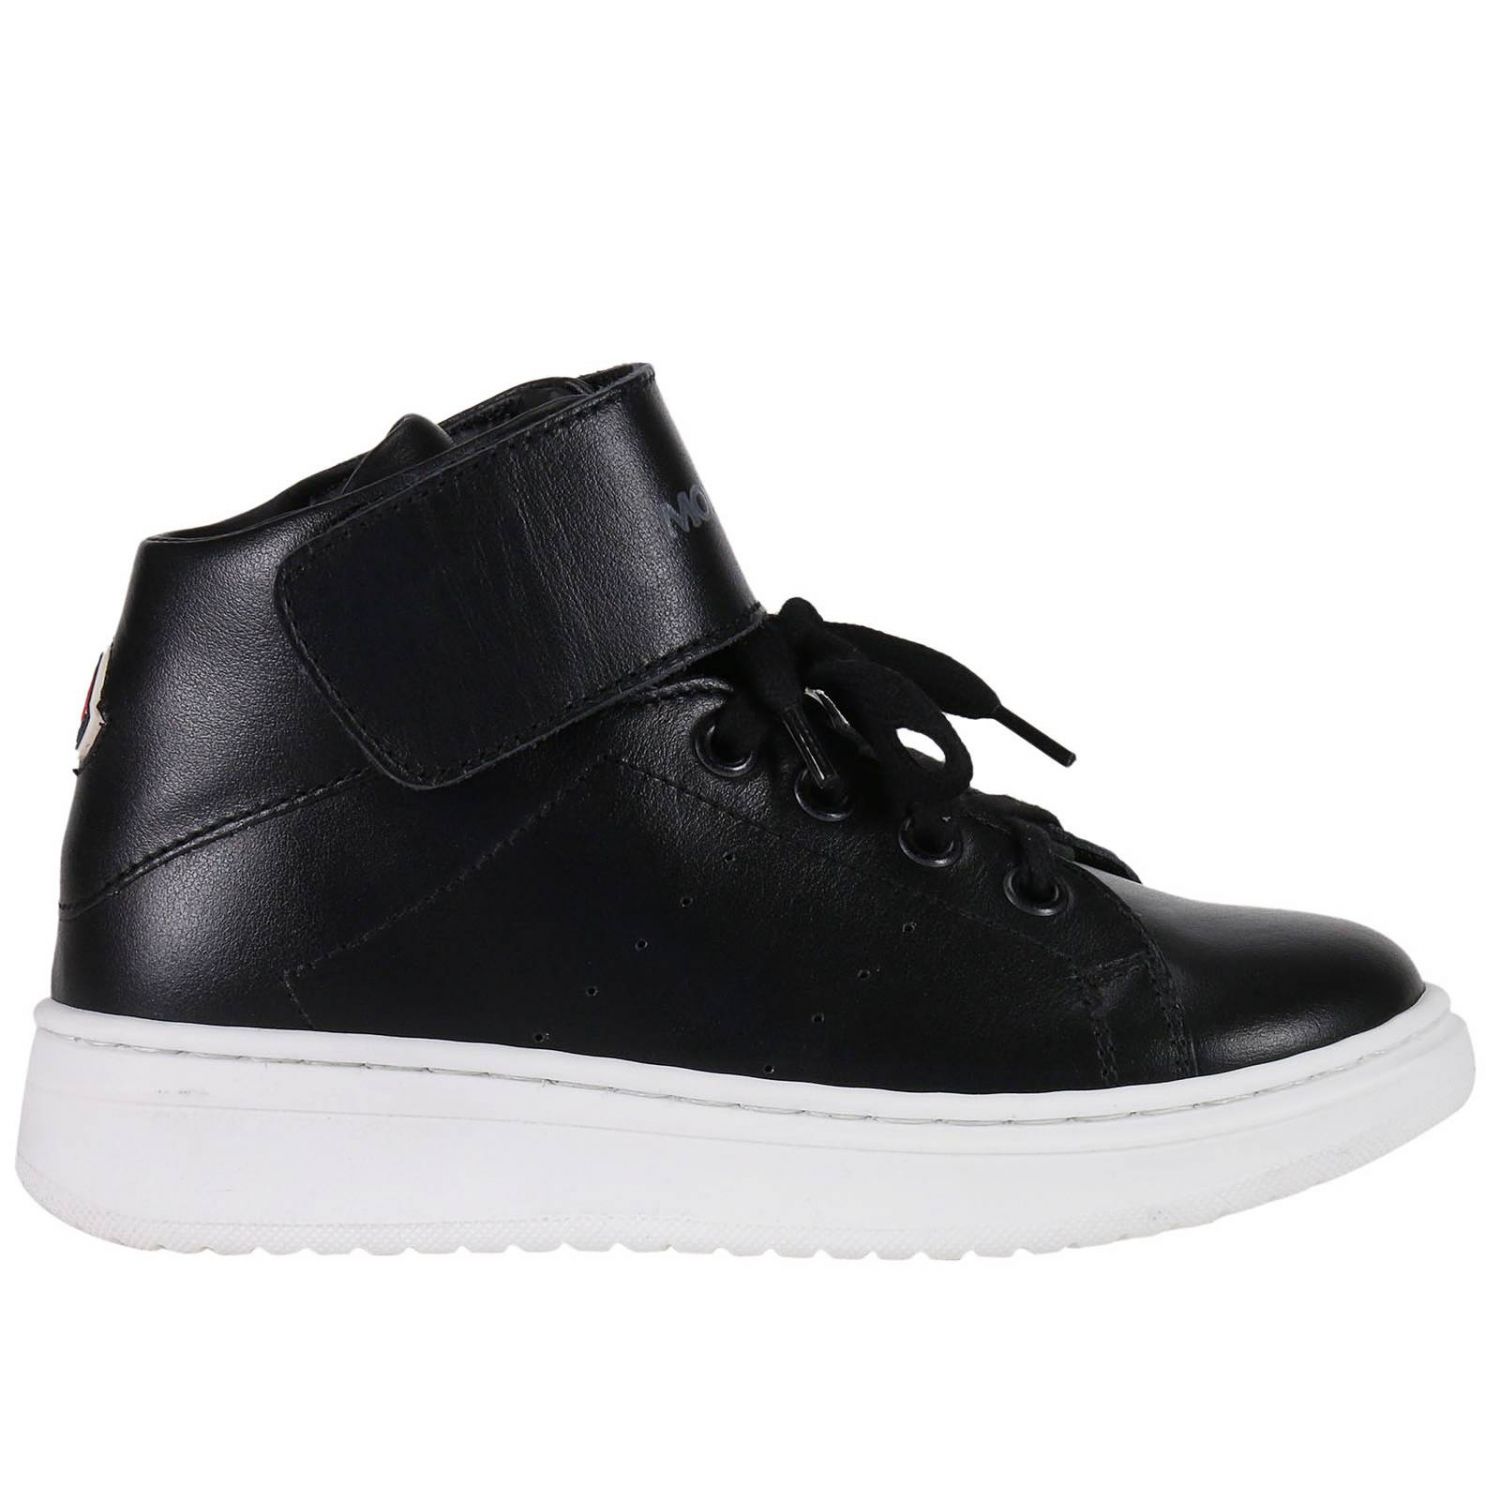 Shoes kids Moncler Junior | Shoes Moncler Kids Black | Shoes Moncler ...